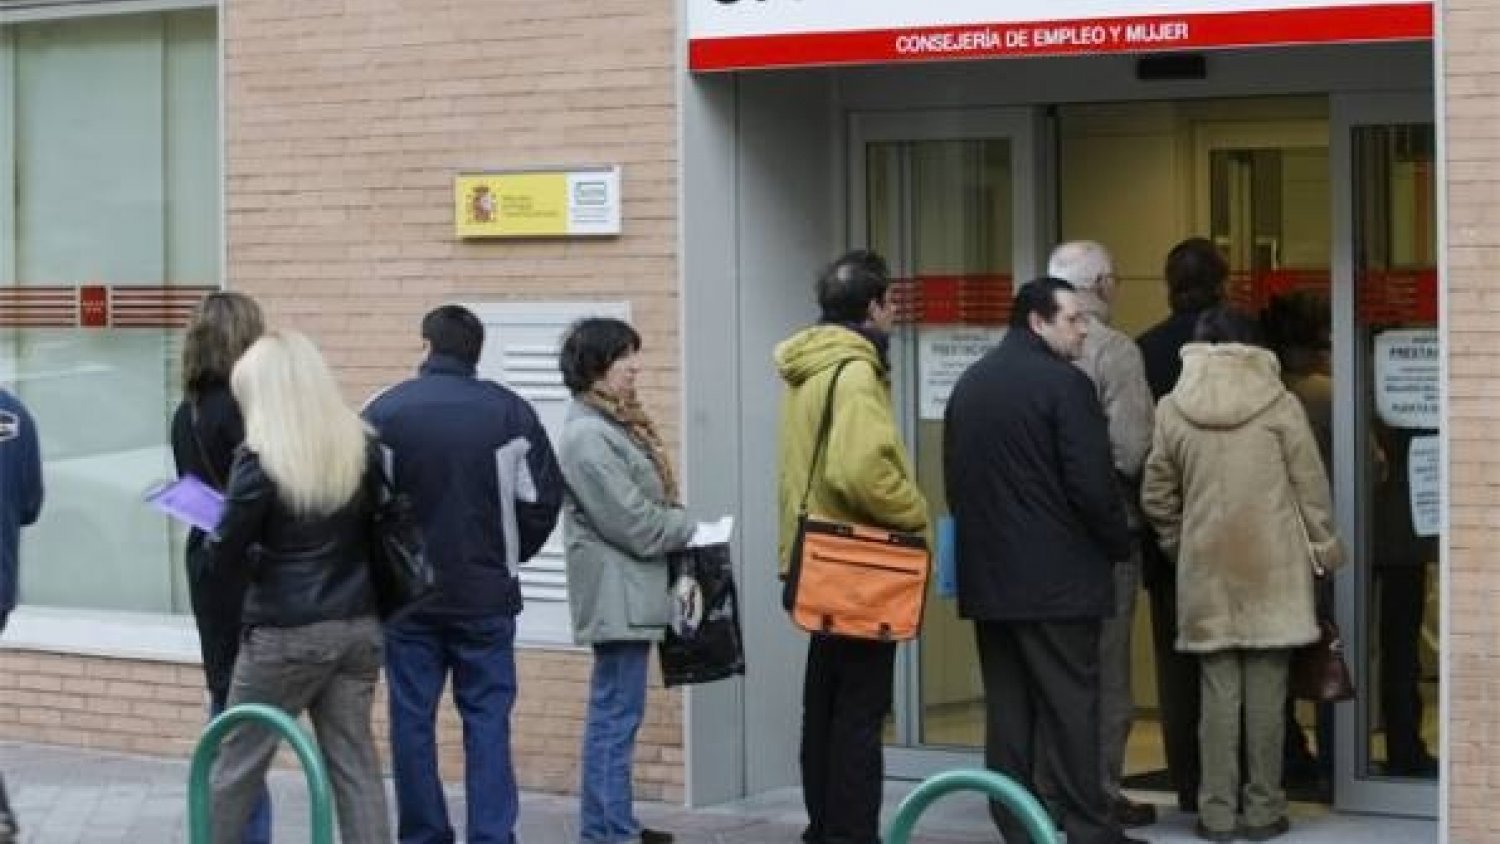 El mes de abril cierra con un descenso de la cifra de paro en 400 personas en Torremolinos